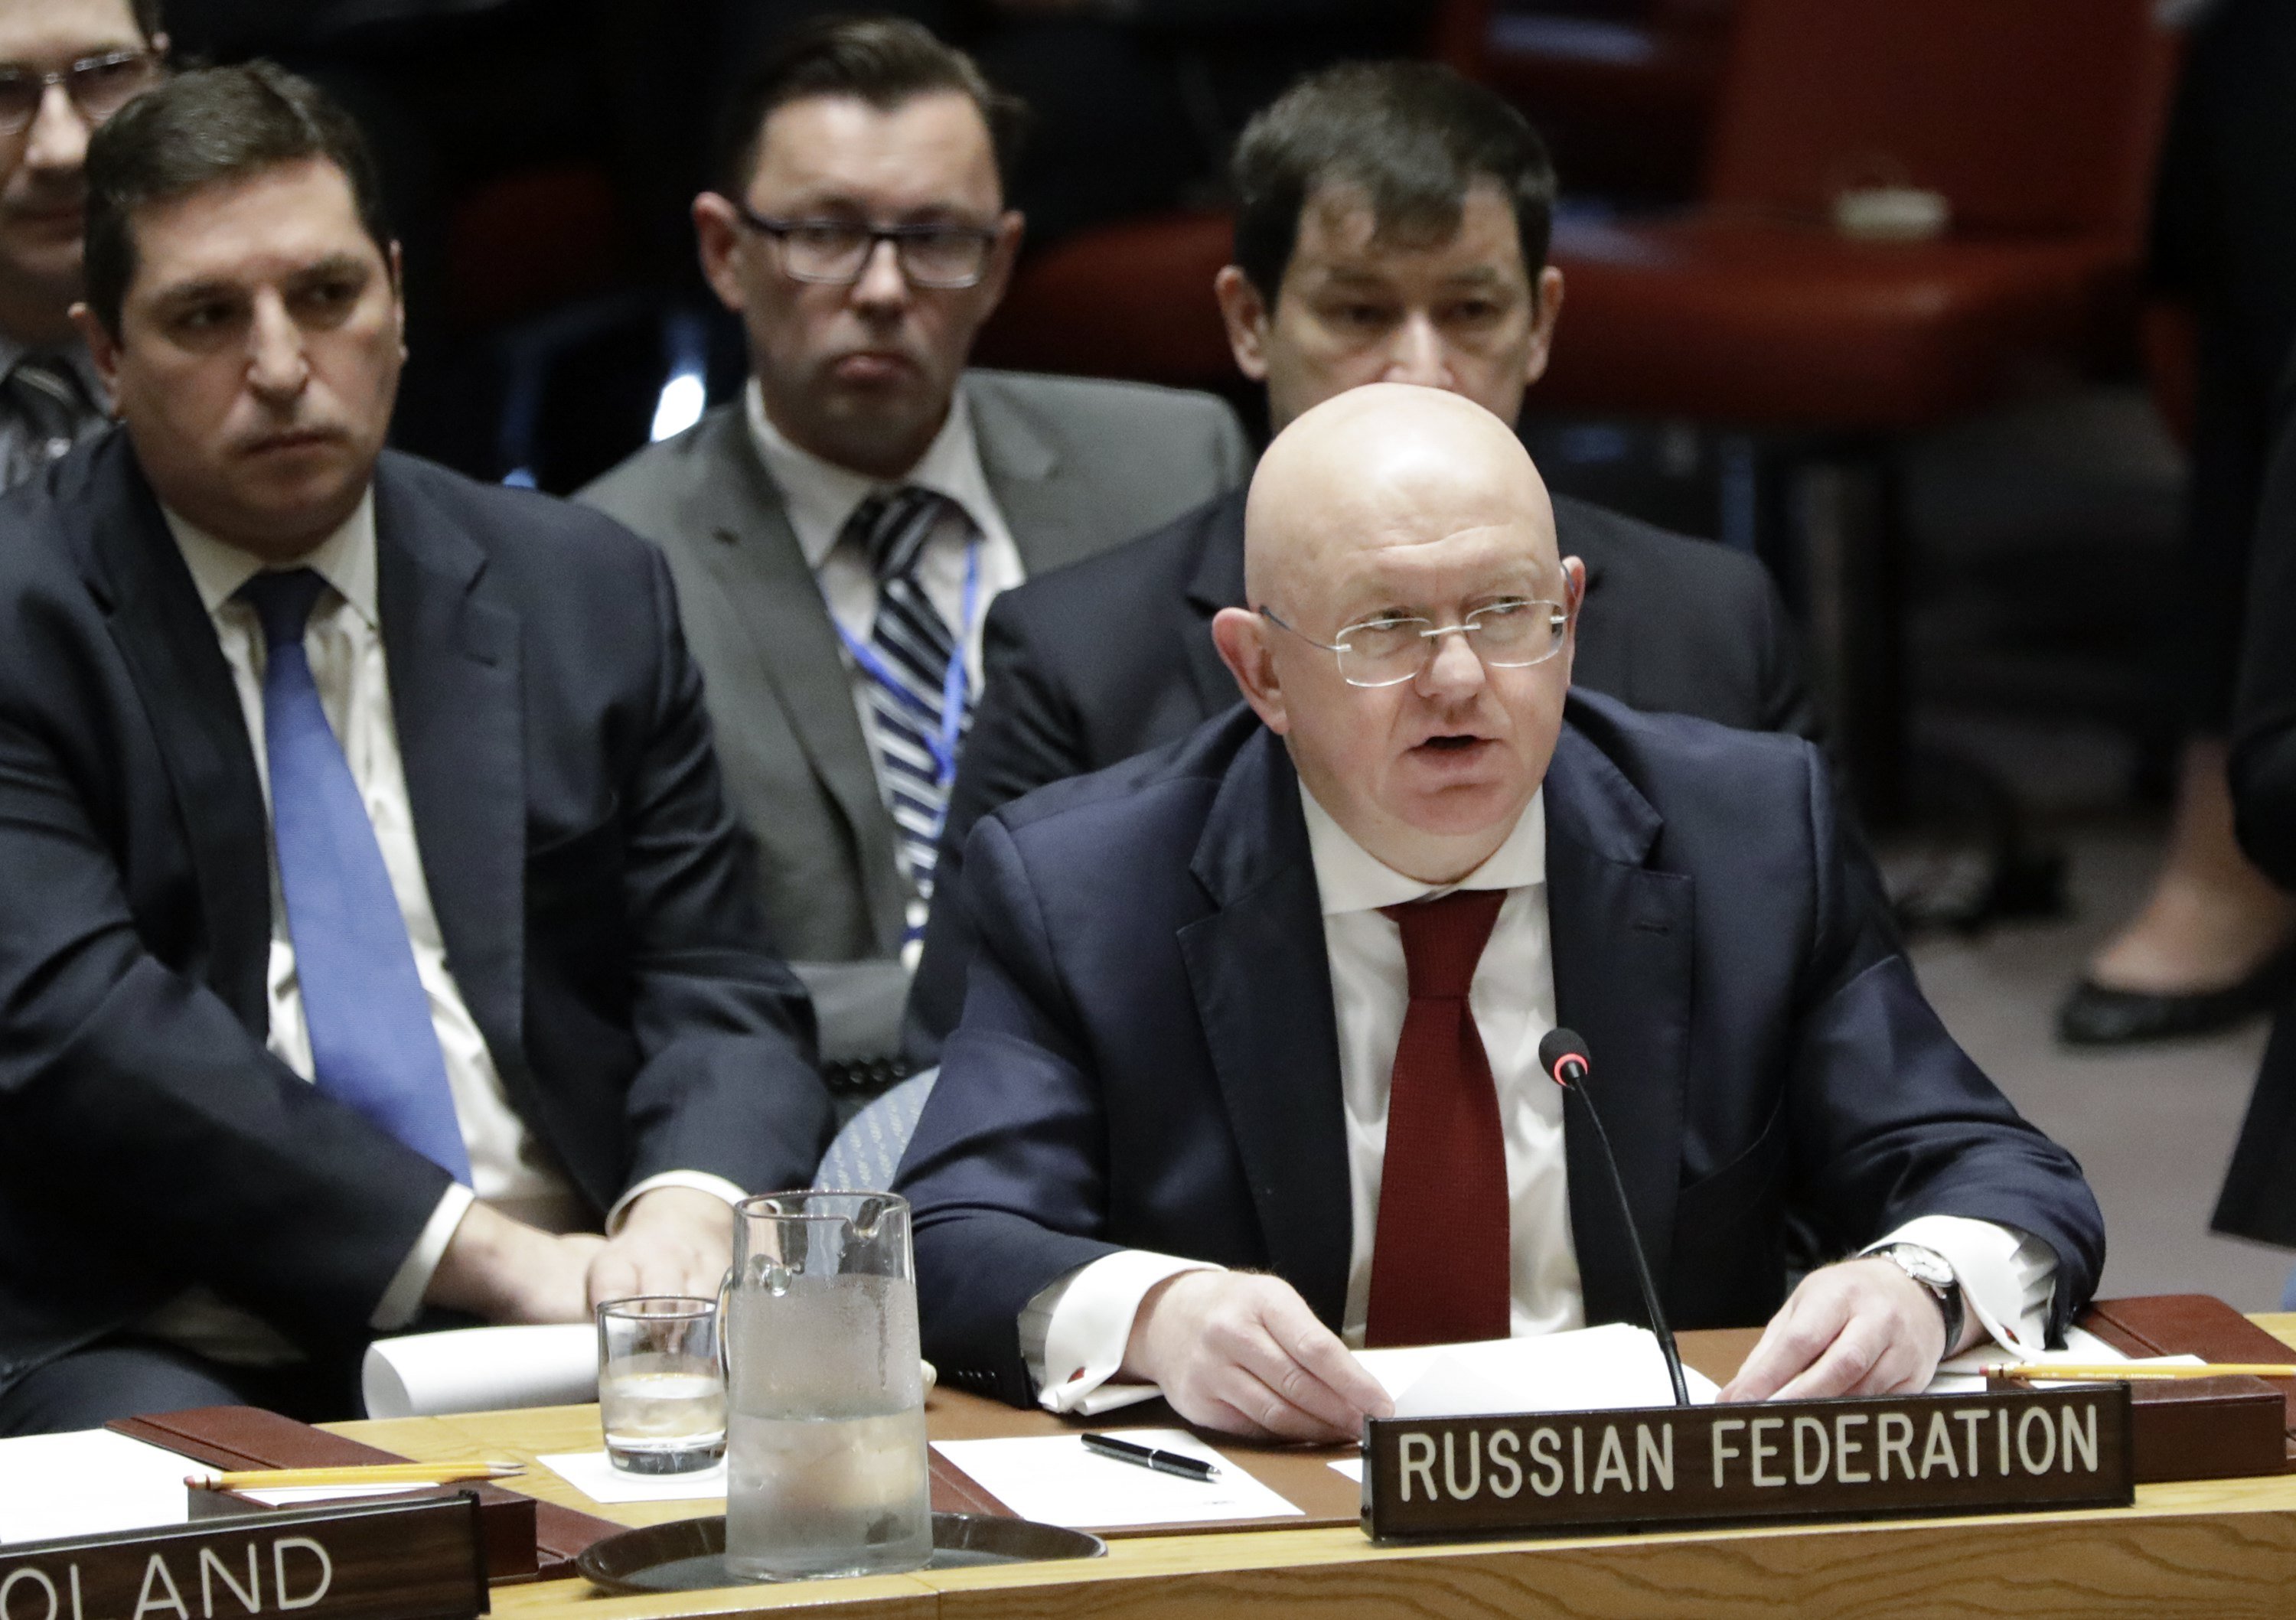 Conselho de Segurança da ONU reprova resolução russa que condenava ataques na Síria